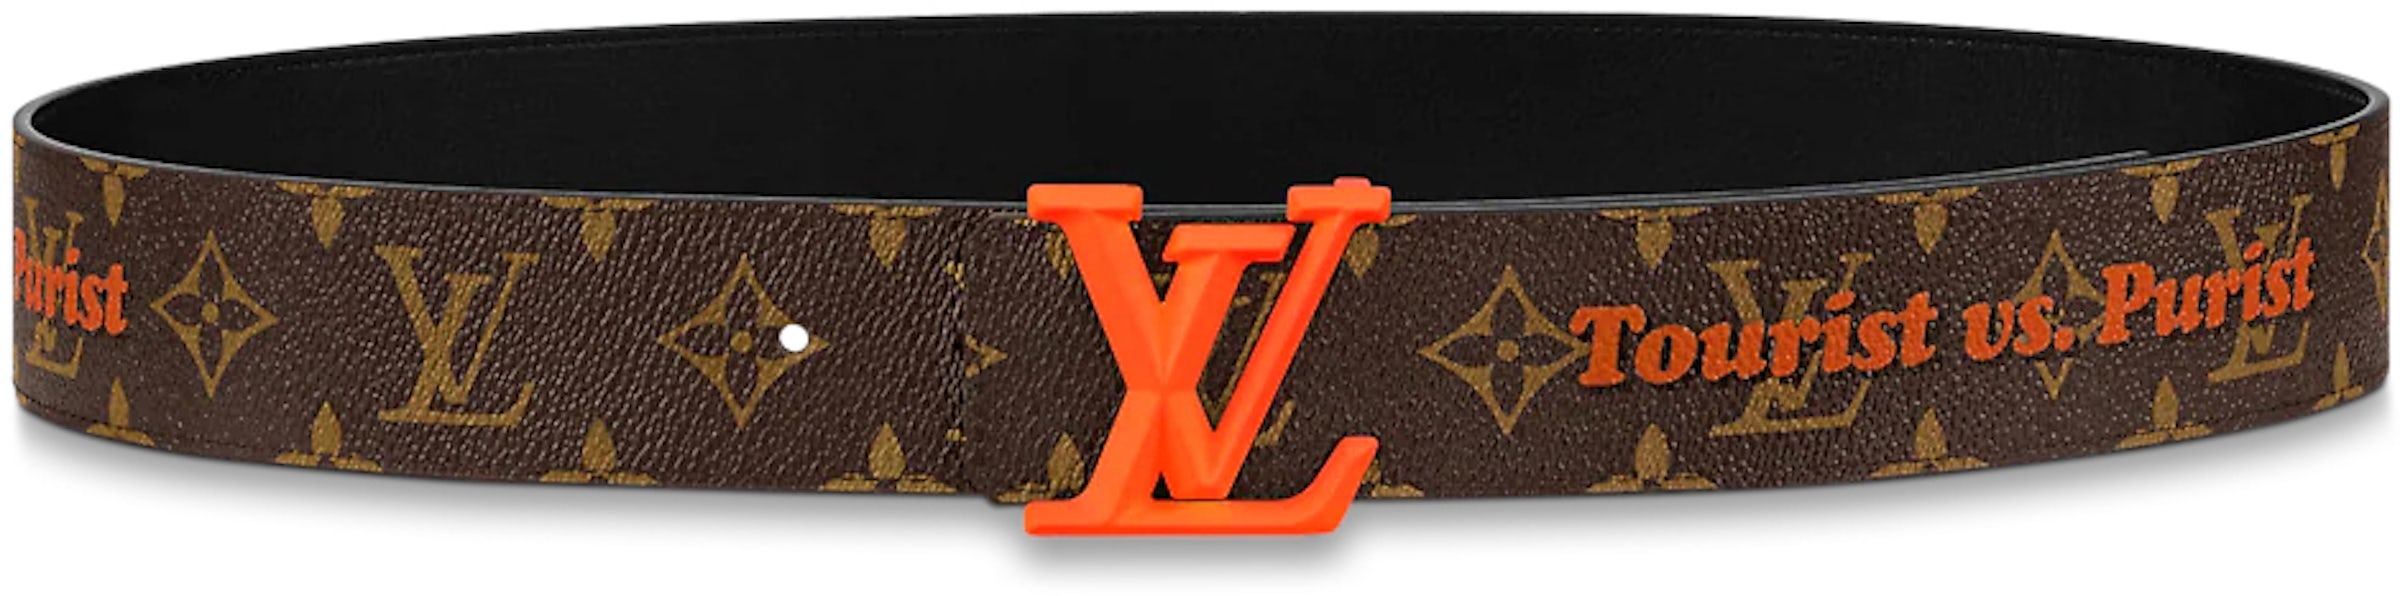 Buy Louis Vuitton Belt Accessories - StockX